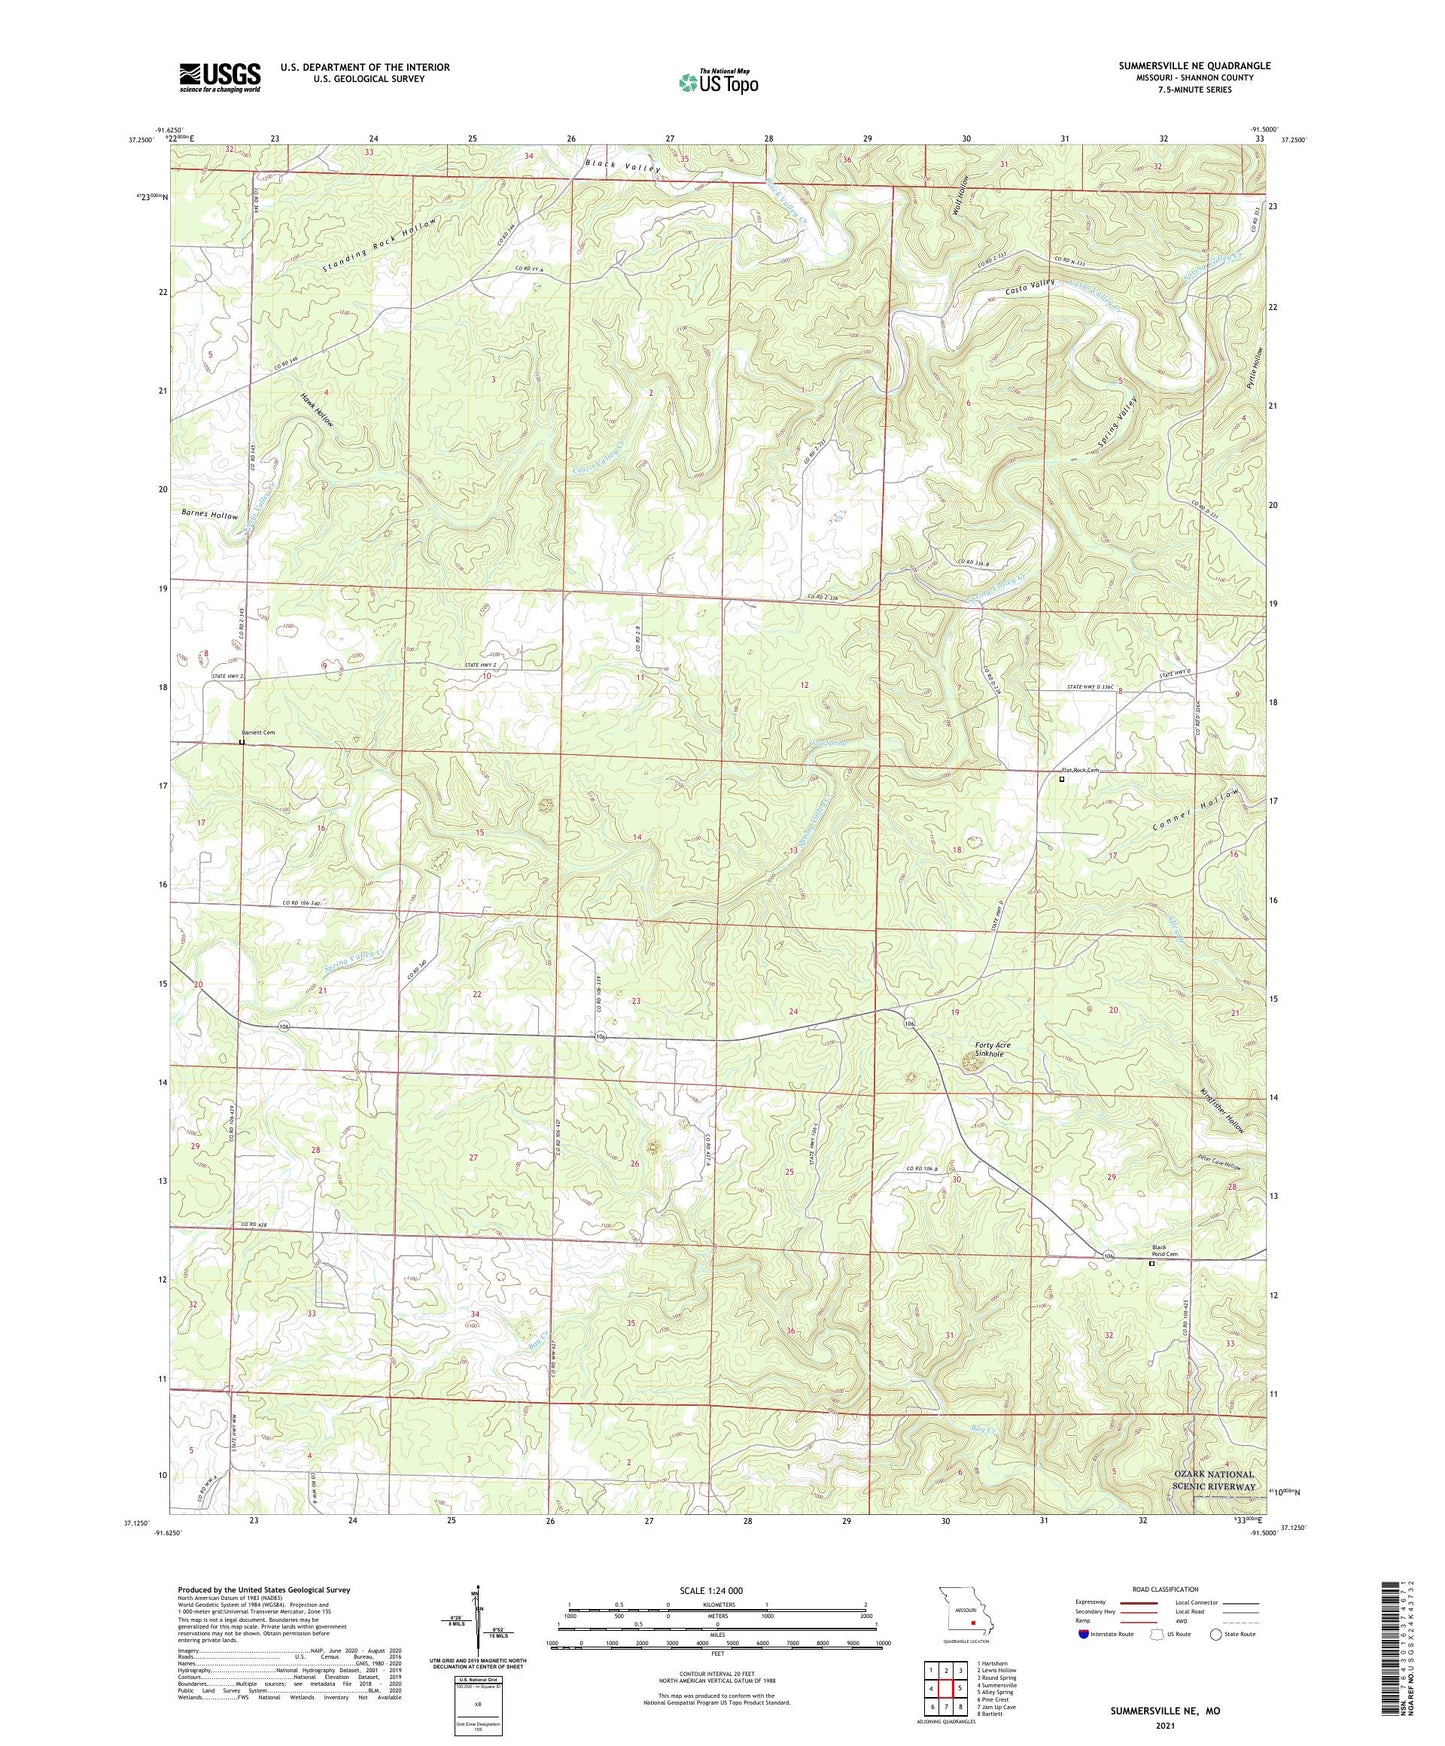 Summersville NE Missouri US Topo Map Image